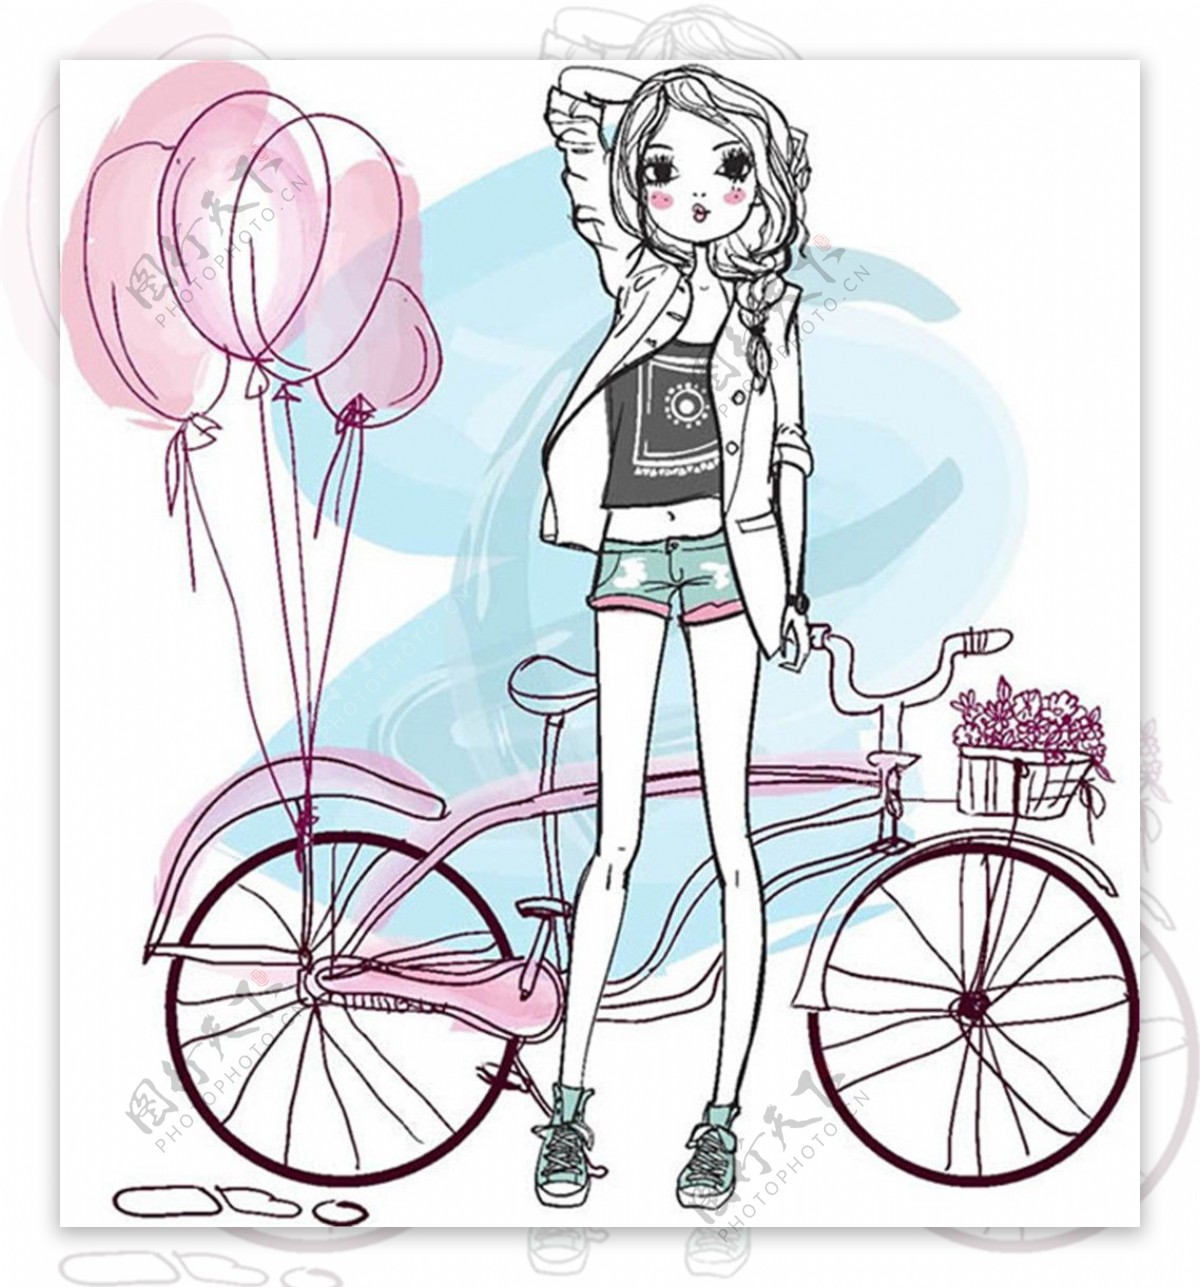 自行车与女孩漫画